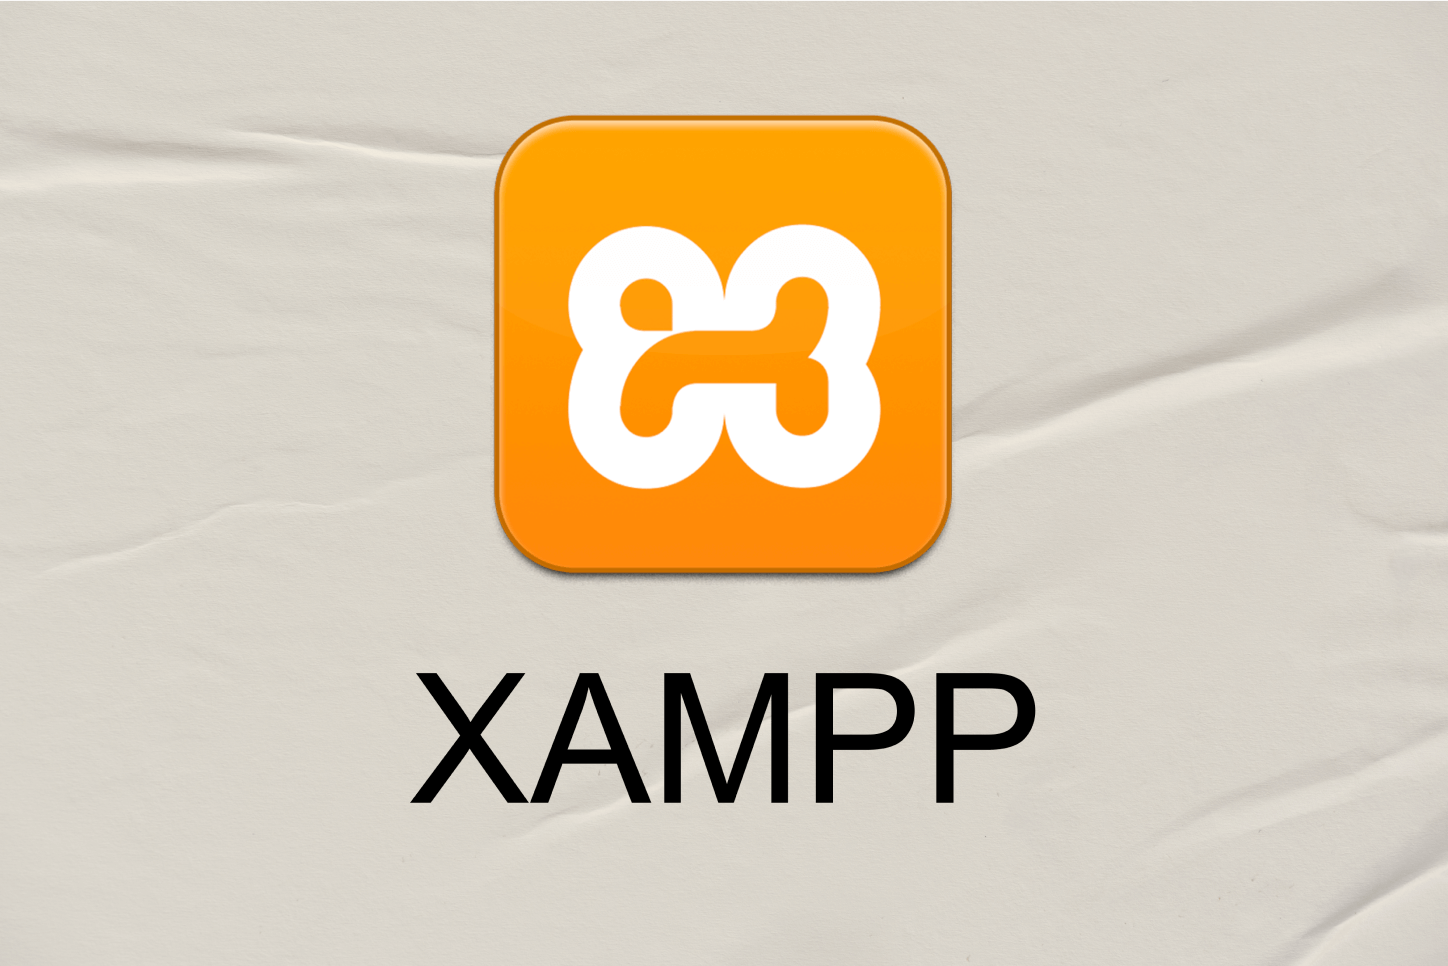 What is Xampp